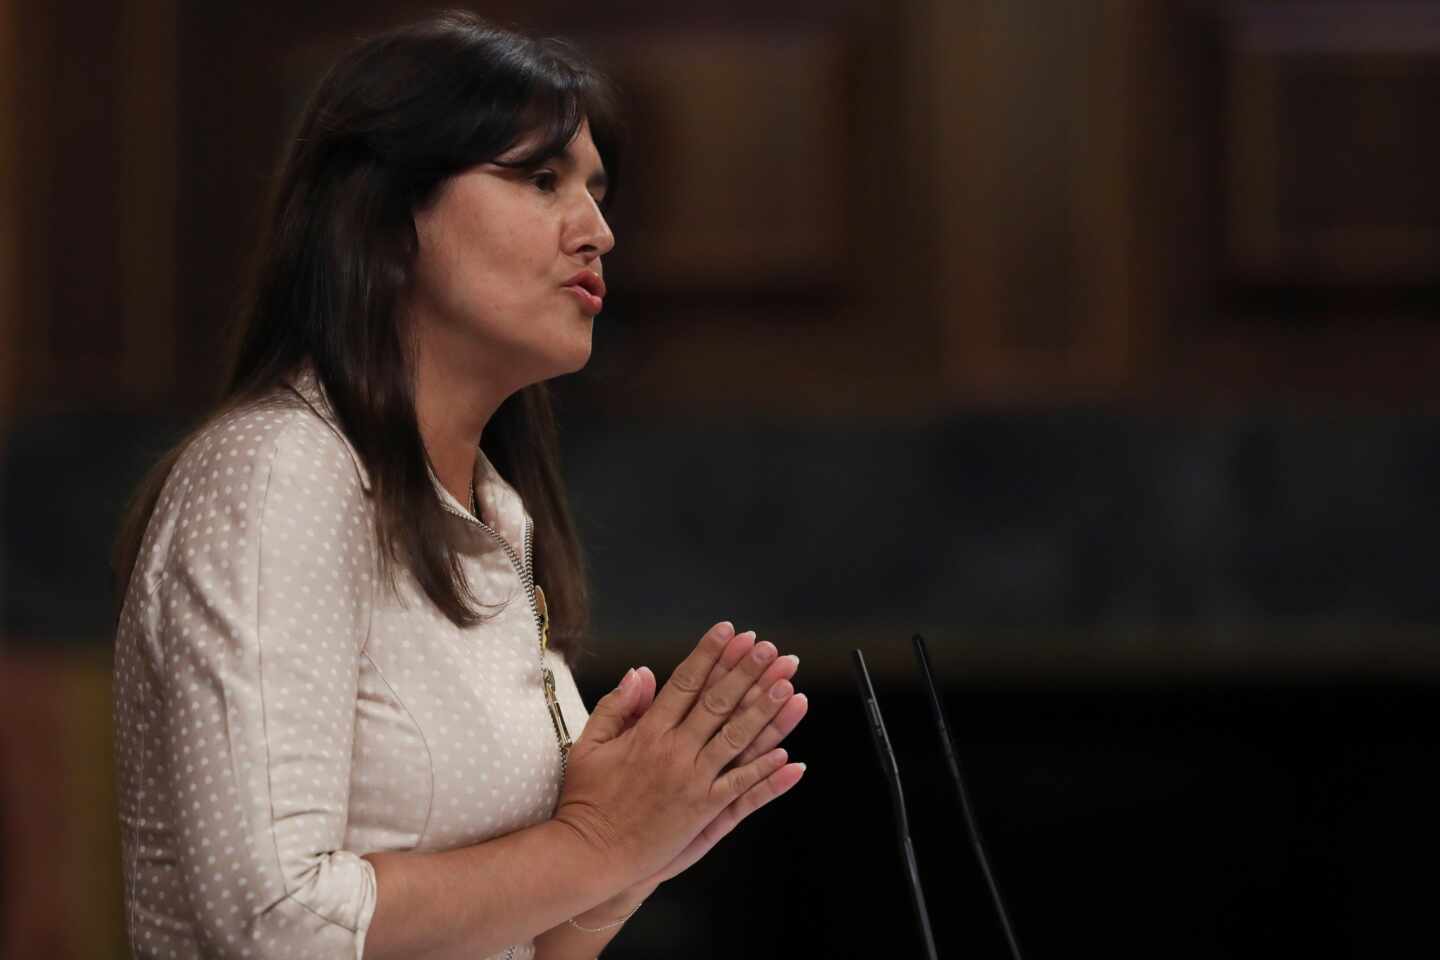 Laura Borràs será la candidata de JxCat en las elecciones de Cataluña tras ganar las primarias